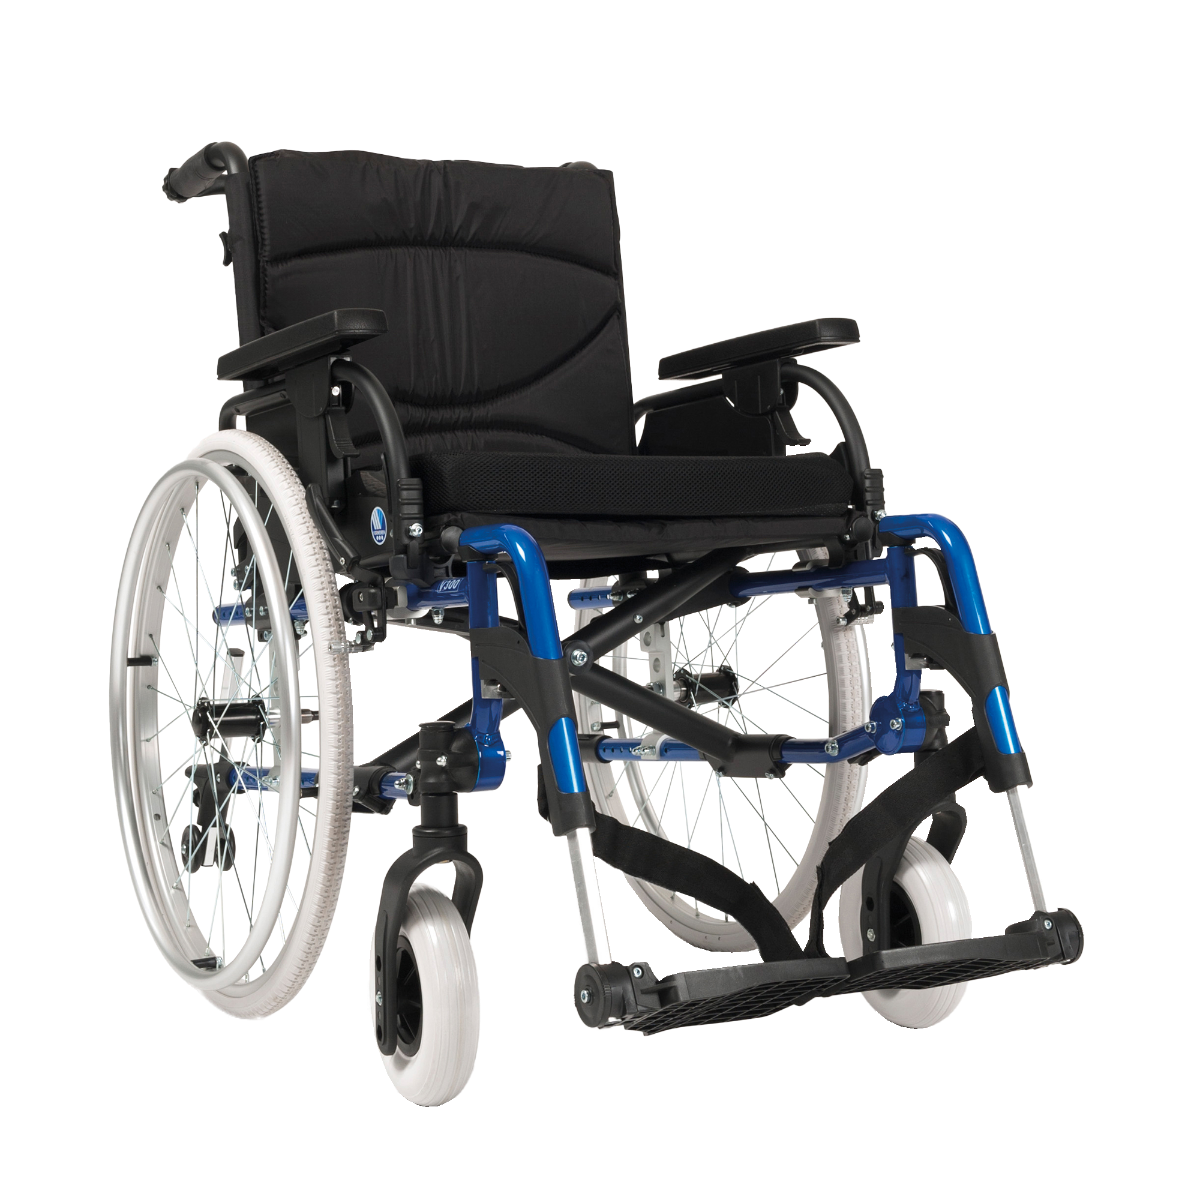 Beschaven afgewerkt eenvoudig De V300DL lichtgewicht rolstoel kopen - Medicura